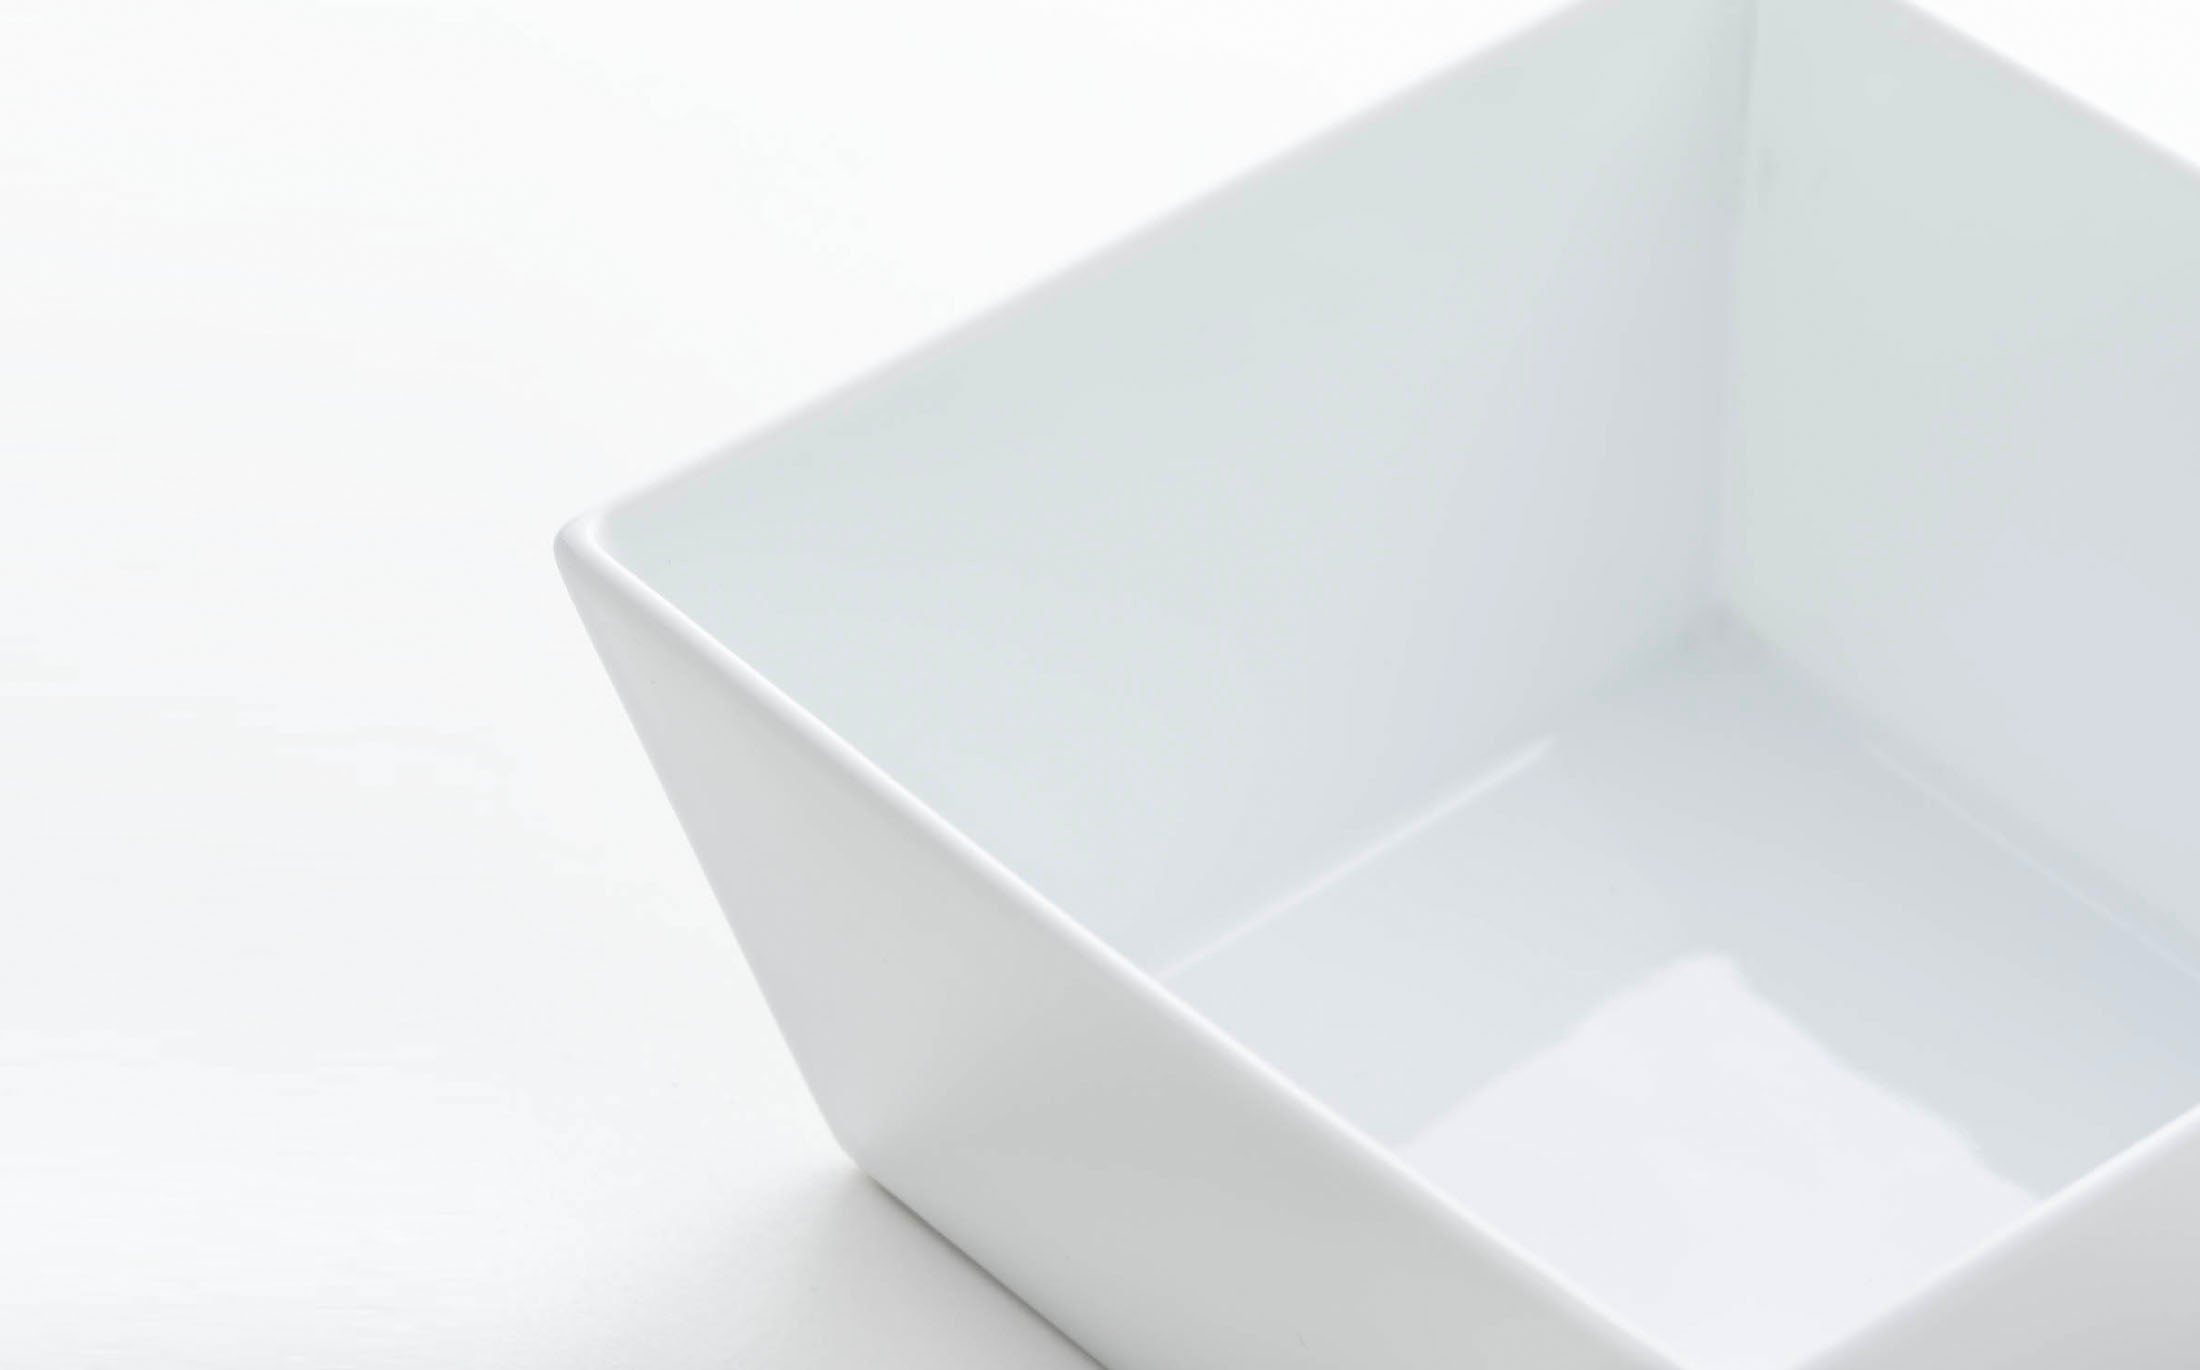 Hikari - Porcelain White - Square Bowl